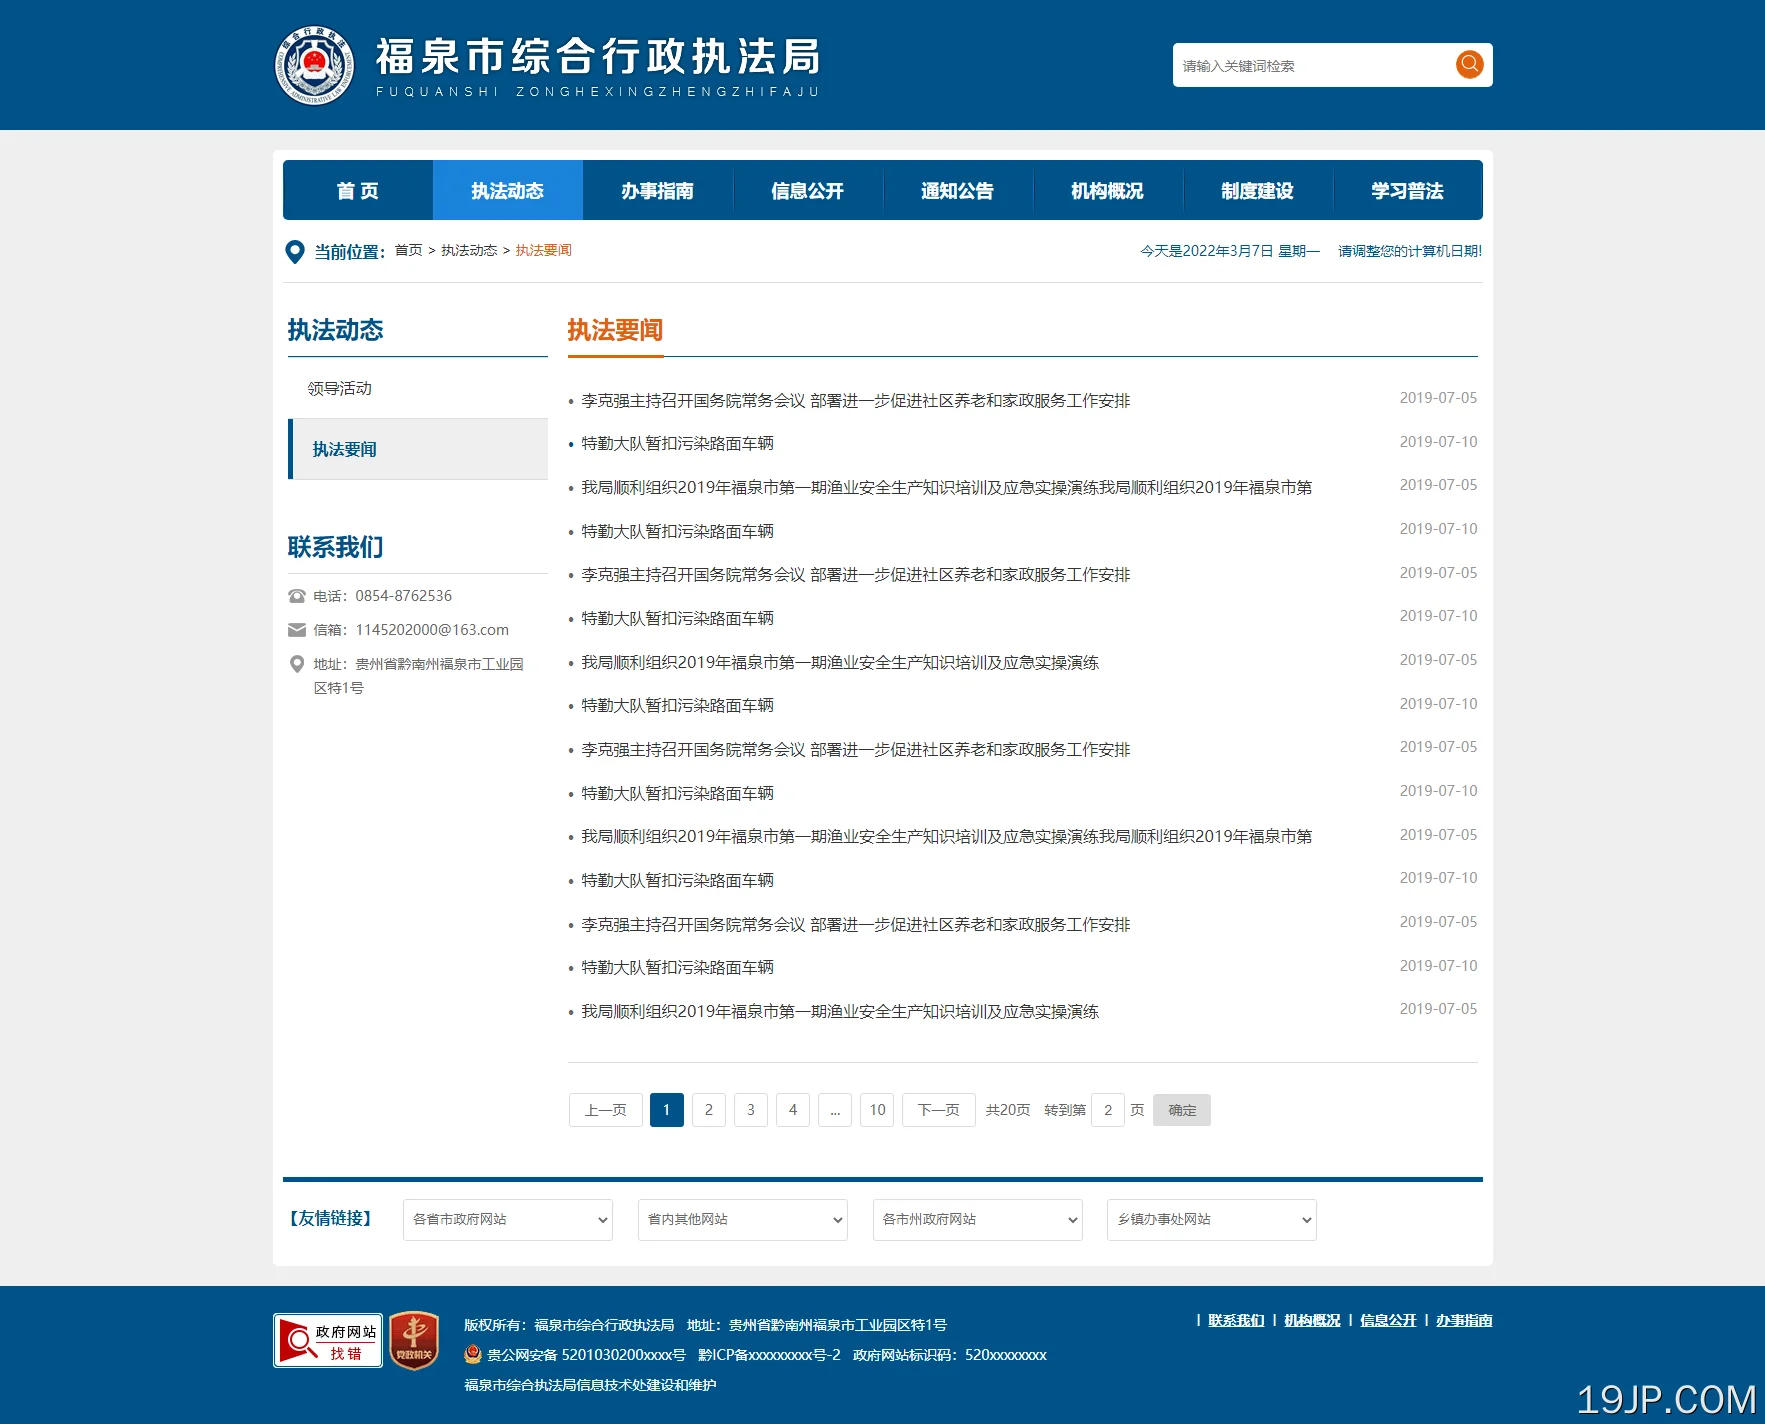 政府网站模板 政府机关事业单位官方网站通用模板 蓝色模板